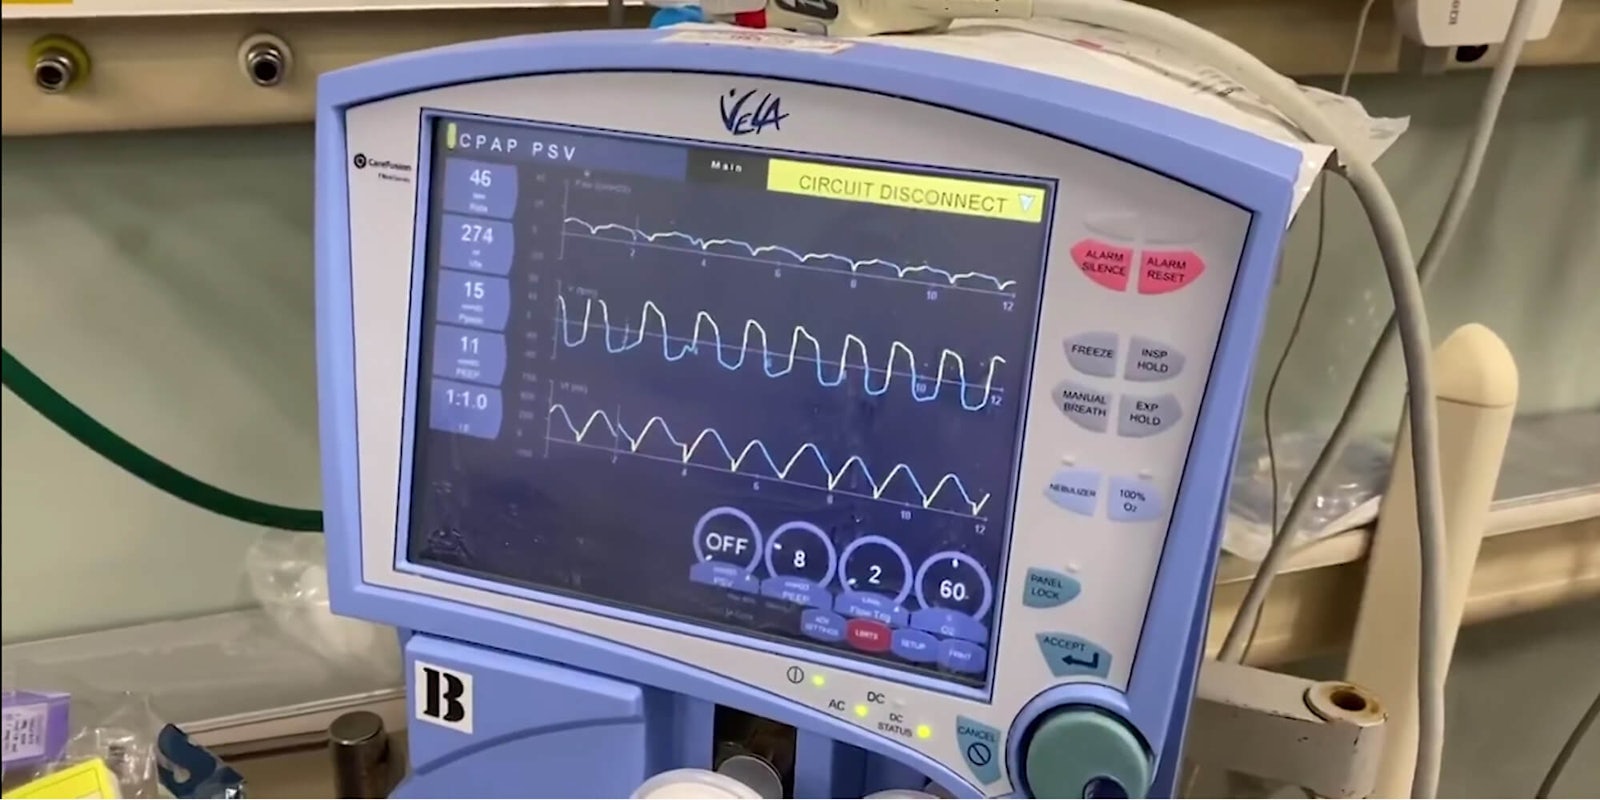 A CPAP machine in a hospital